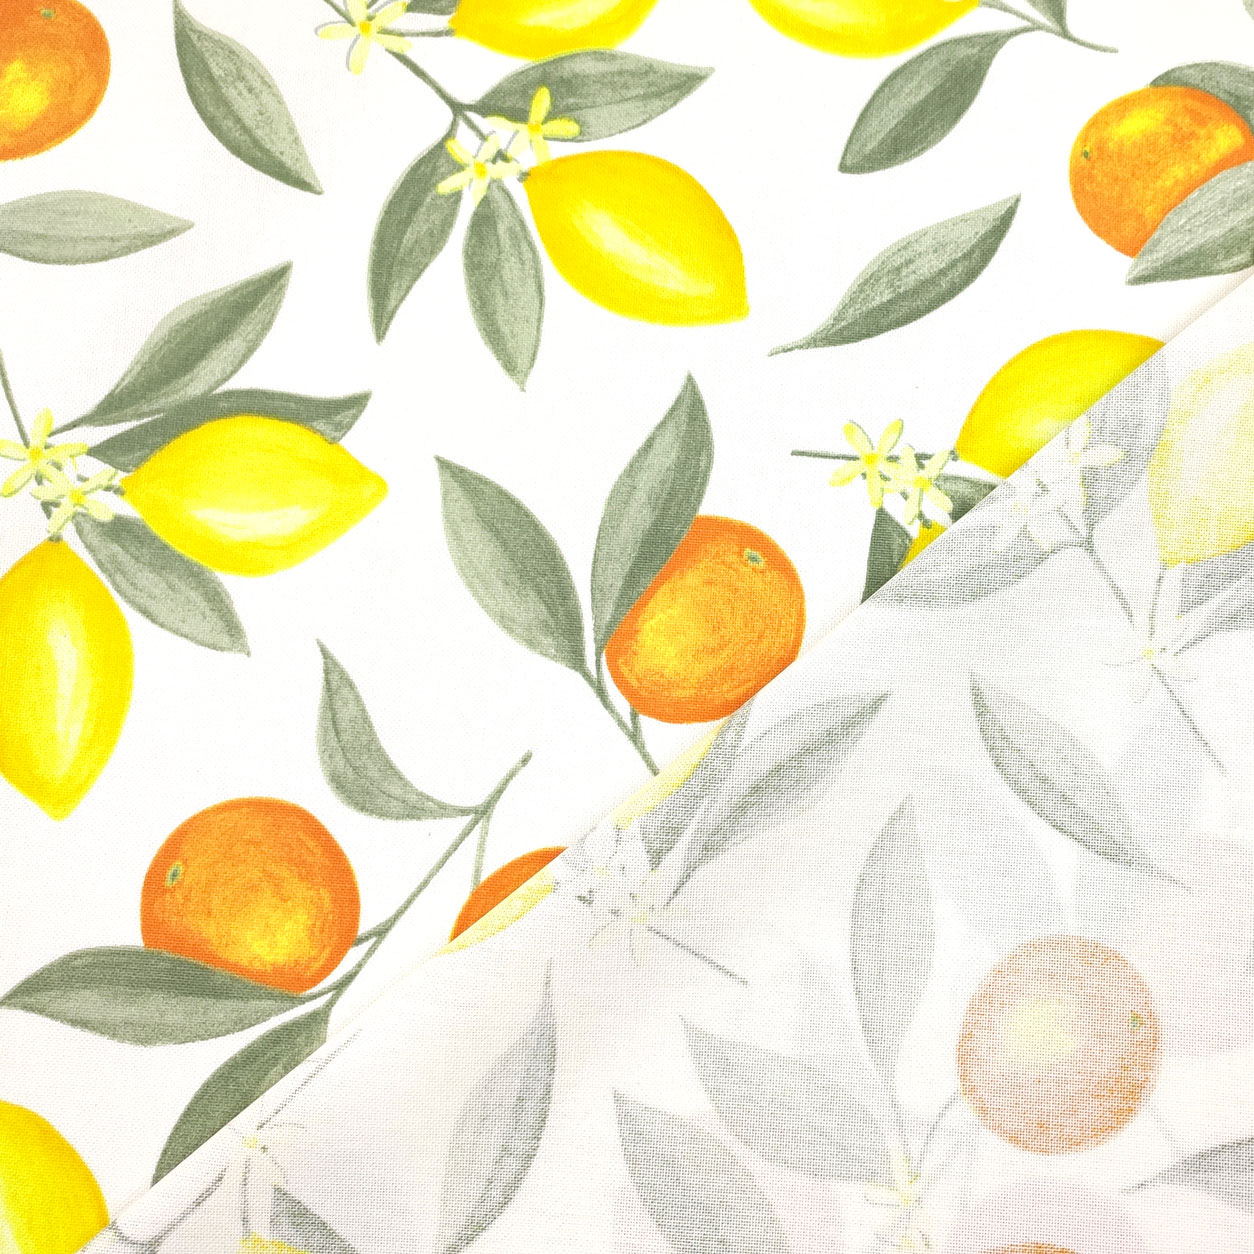 stoffa-panama-fantasia-di-limoni-arance